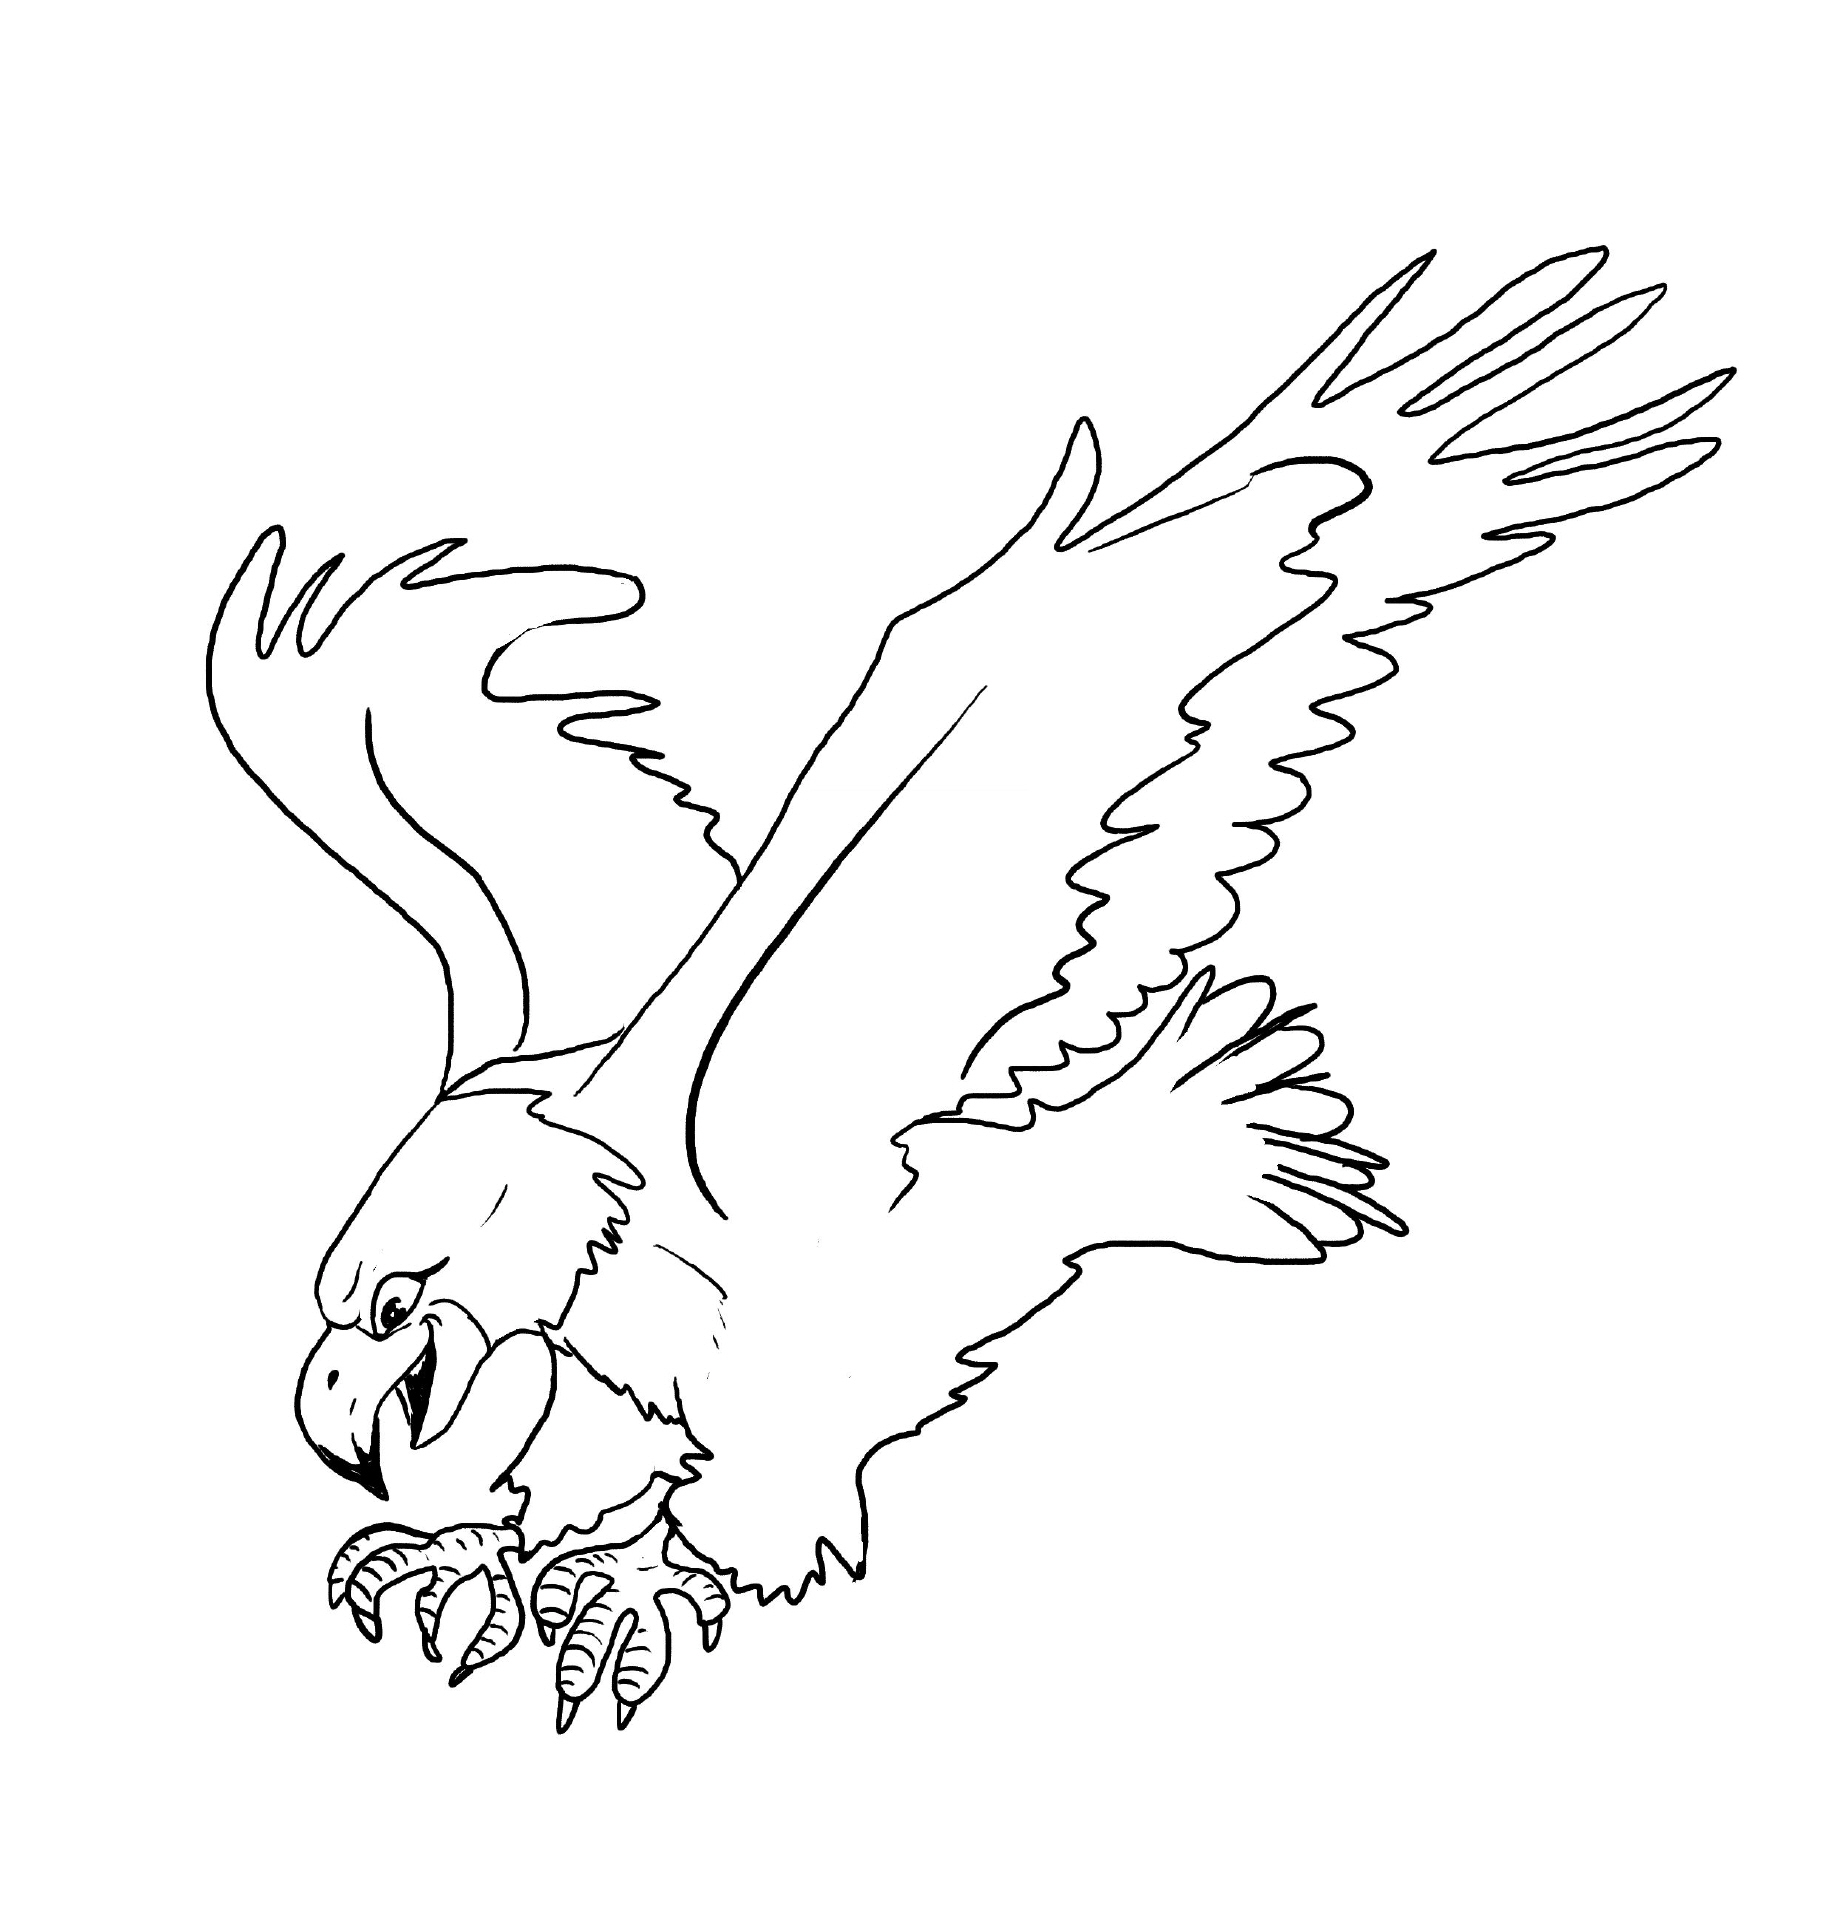 Adler coloring #9, Download drawings